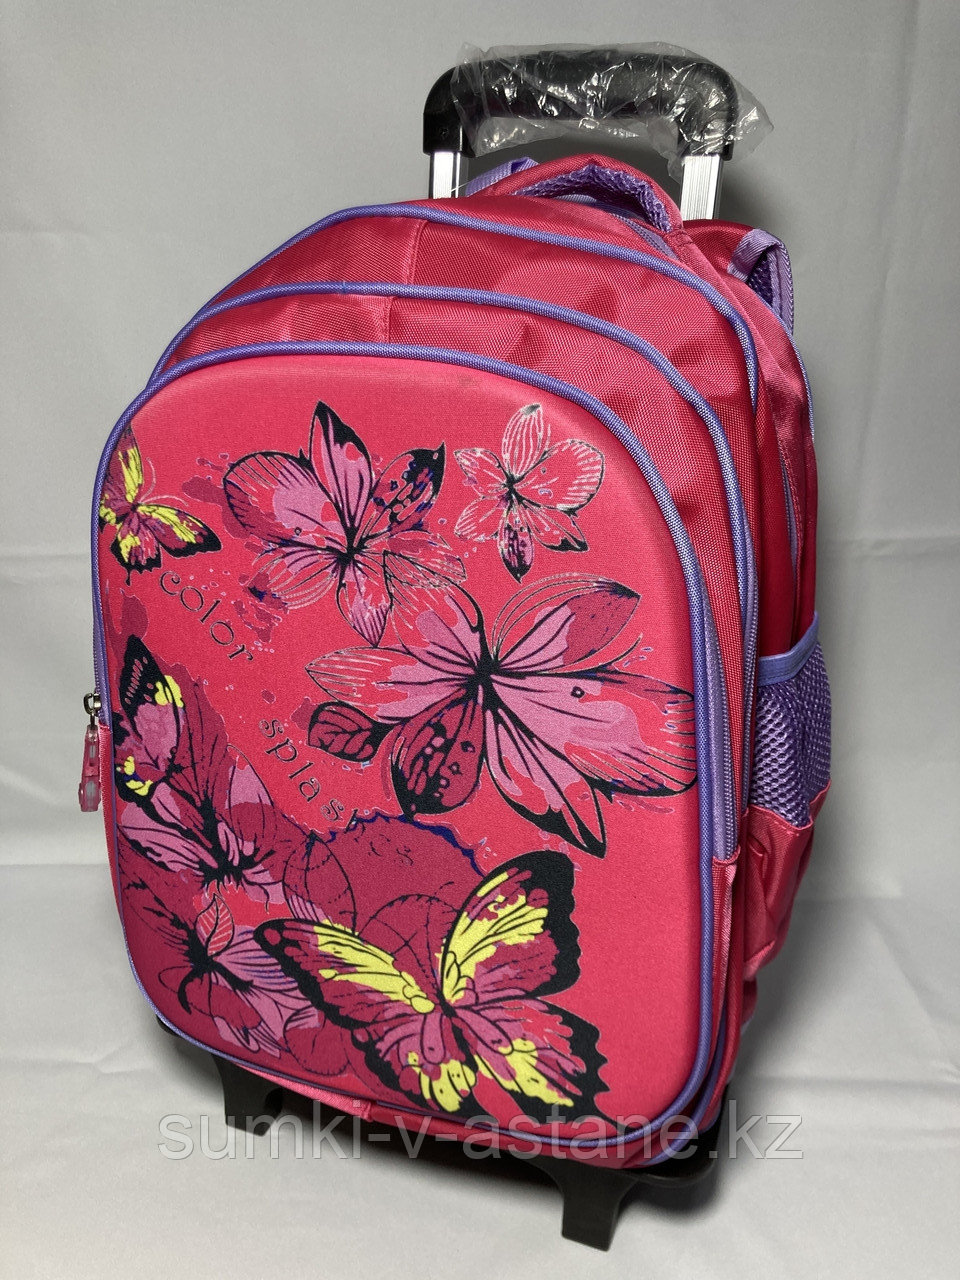 Школьный рюкзак на колесах для девочек, 1-4-й класс (высота 47 см, ширина 29 см, глубина 16 см)